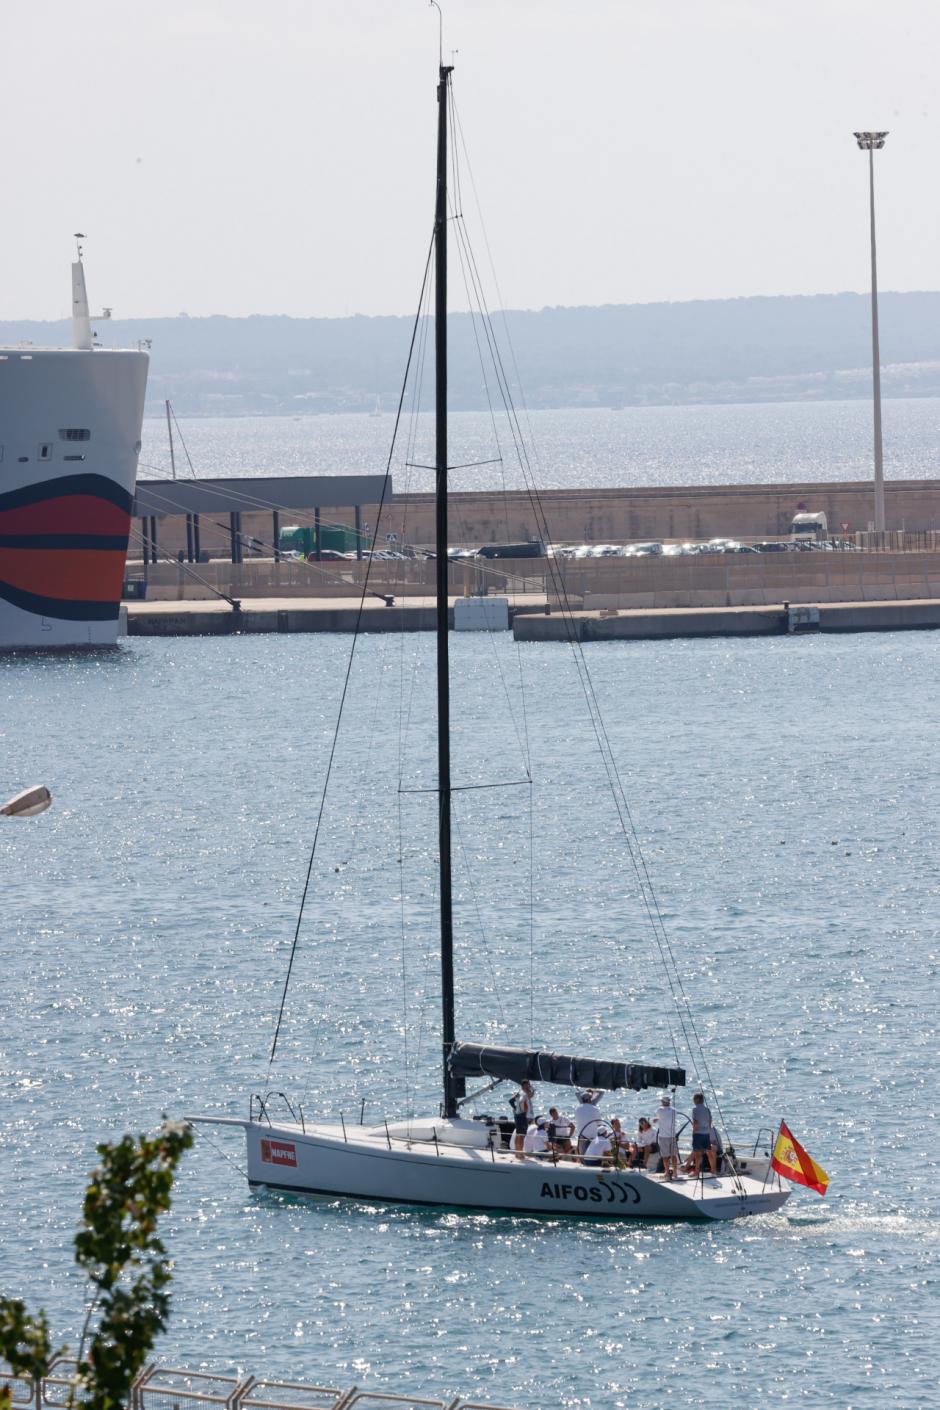 Primeras imágenes del Rey Felipe VI saliendo a navegar en Mallorca